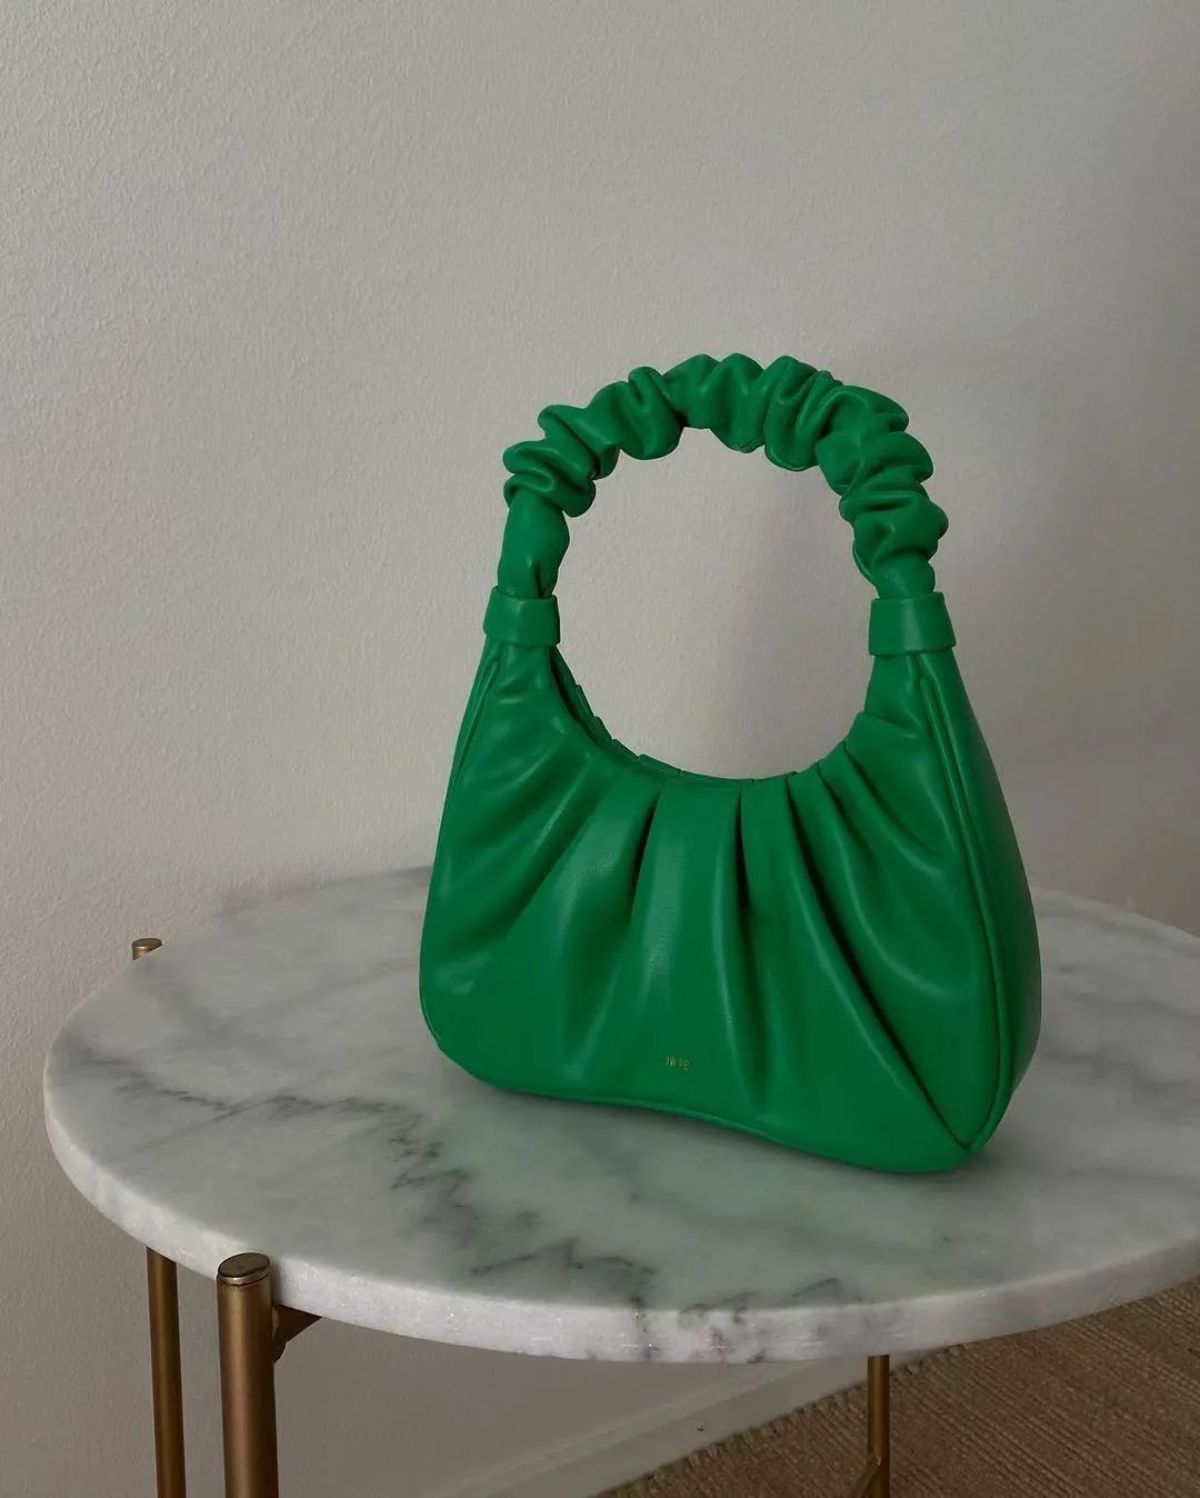 Emily Ratajkowski's JW Pei Bag Is On Sale For  Prime Day